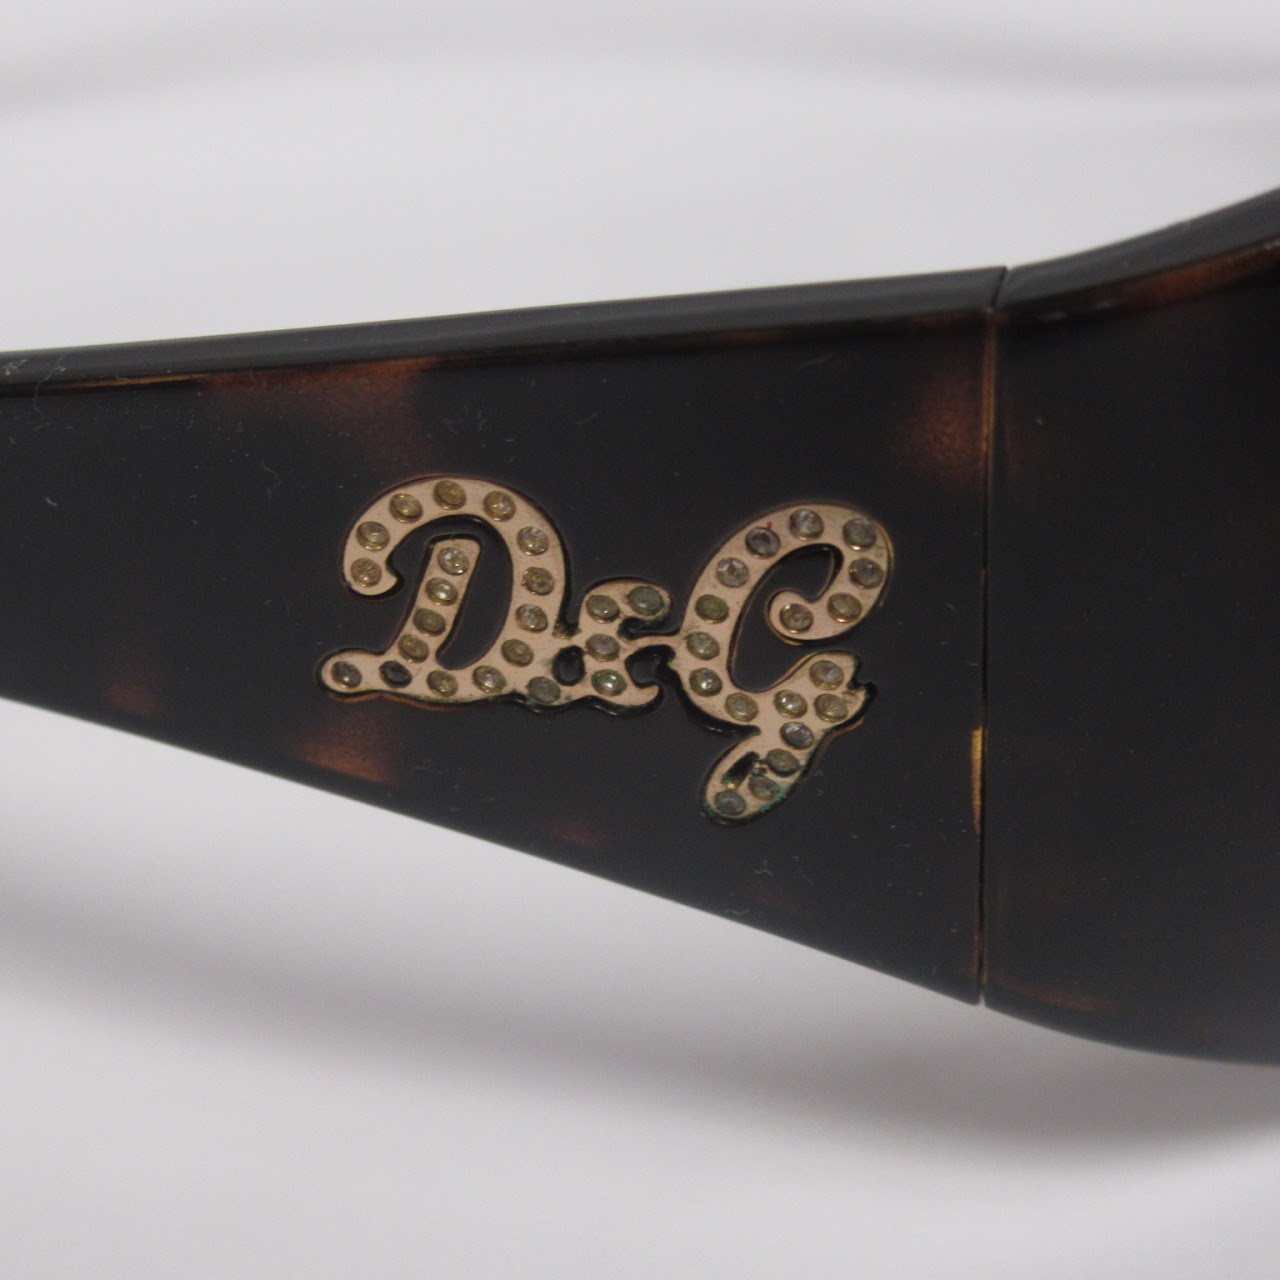 D&G Diamante Sunglasses